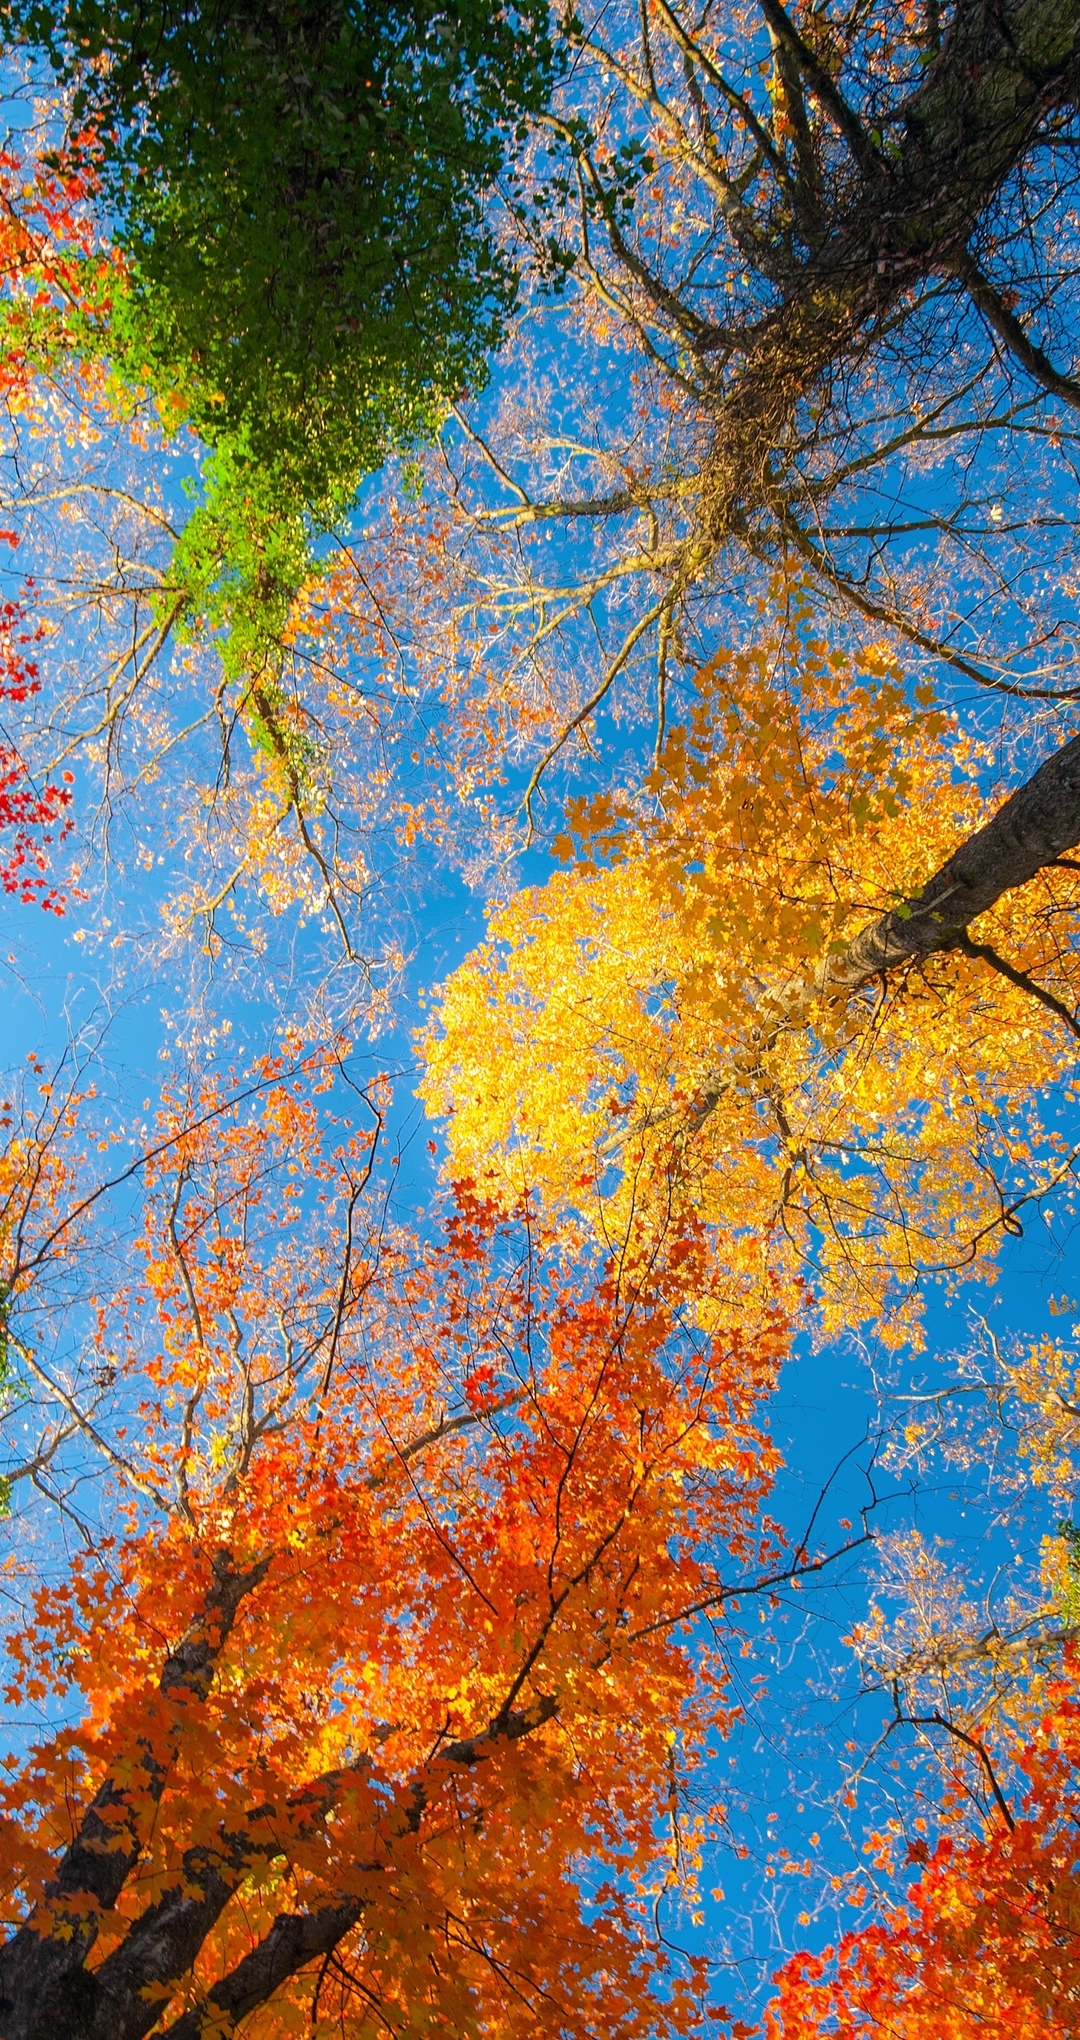 Картинка: Деревья, кроны, листья, ветки, желтый, зелёный, оранжевый, небо, голубой, осень